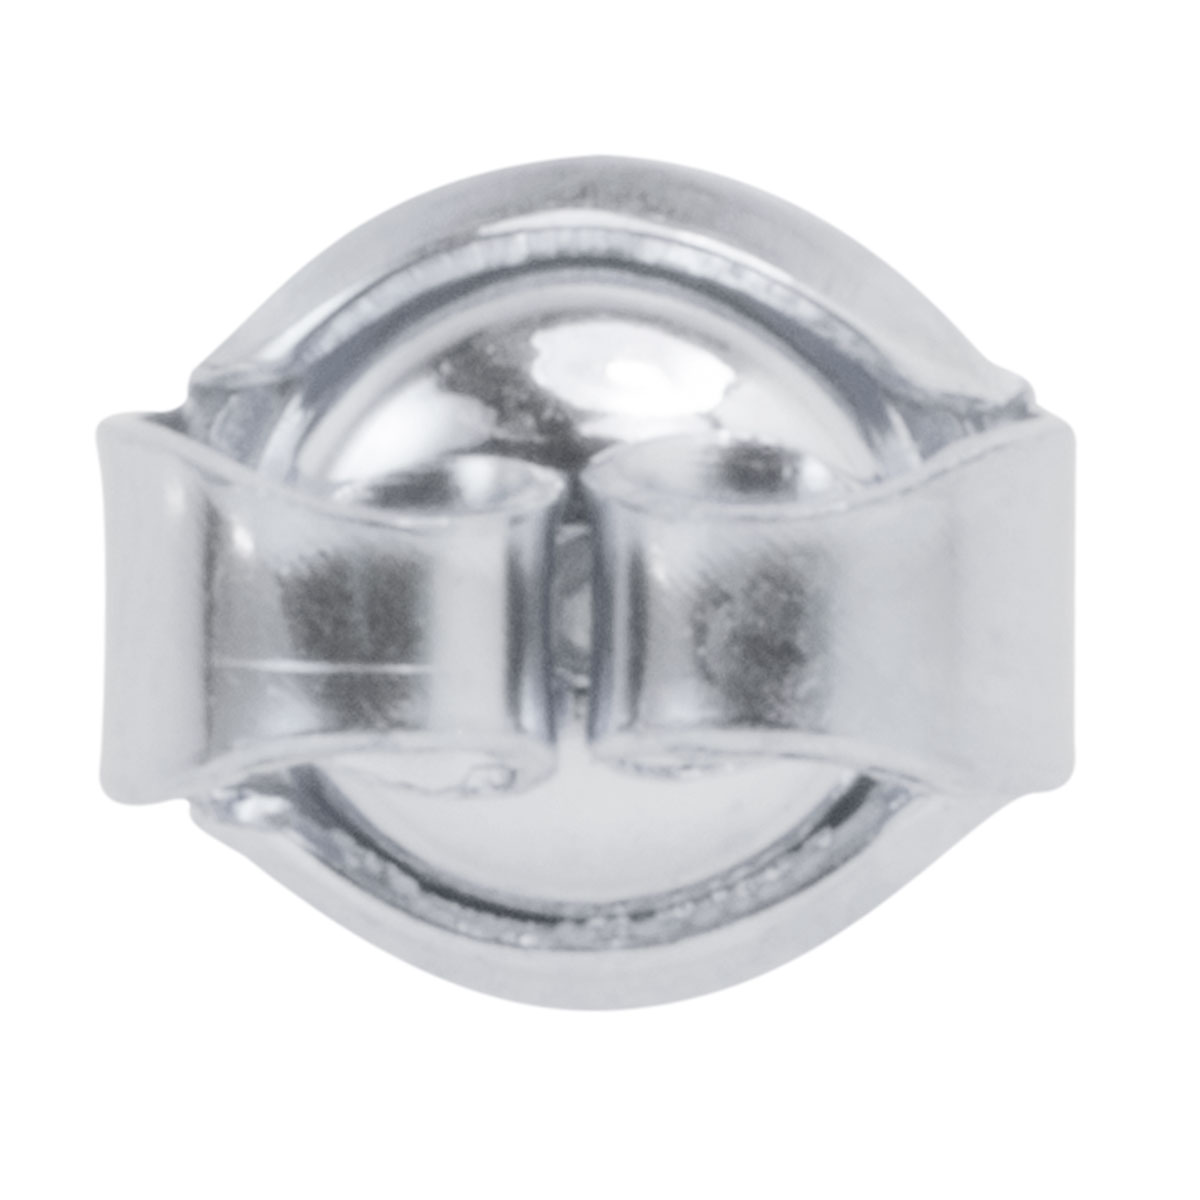 Klemm-Muttern mit Sicherheitsbügel, 925/- Silber Ø 6,0 mm